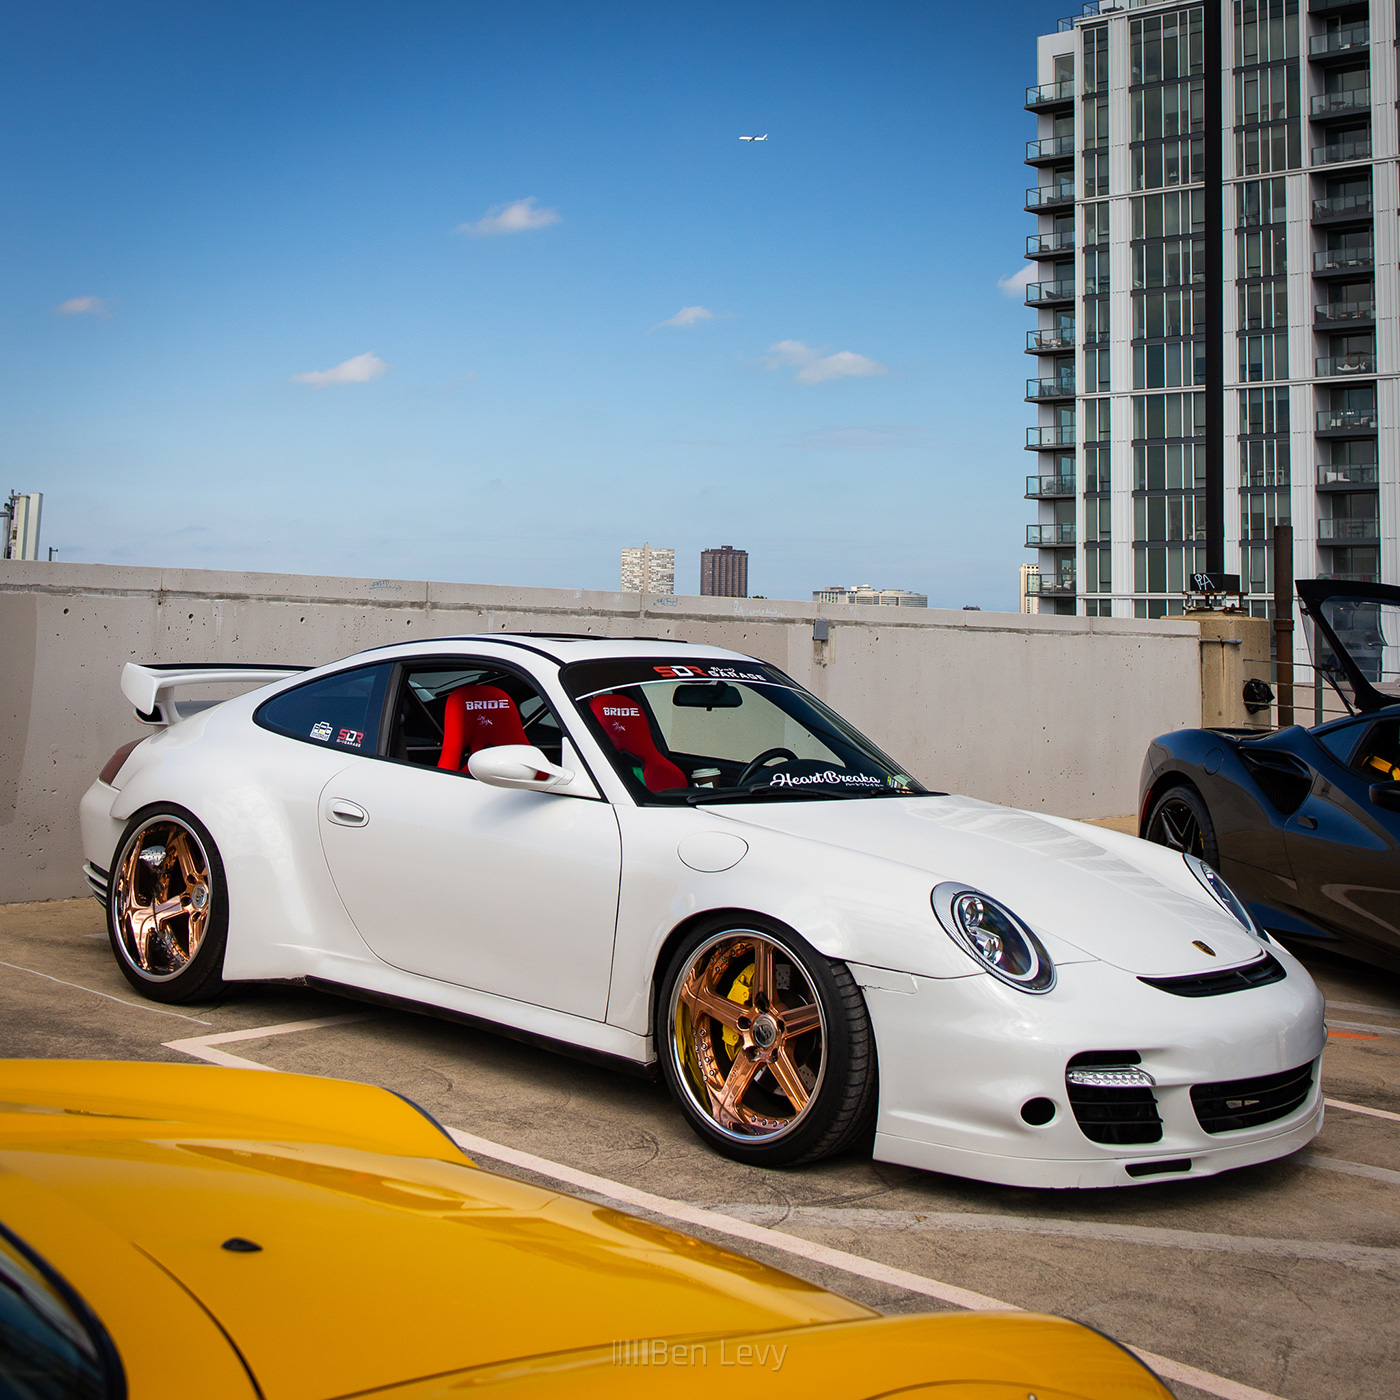 White Porsche 911 on Gold Wheels